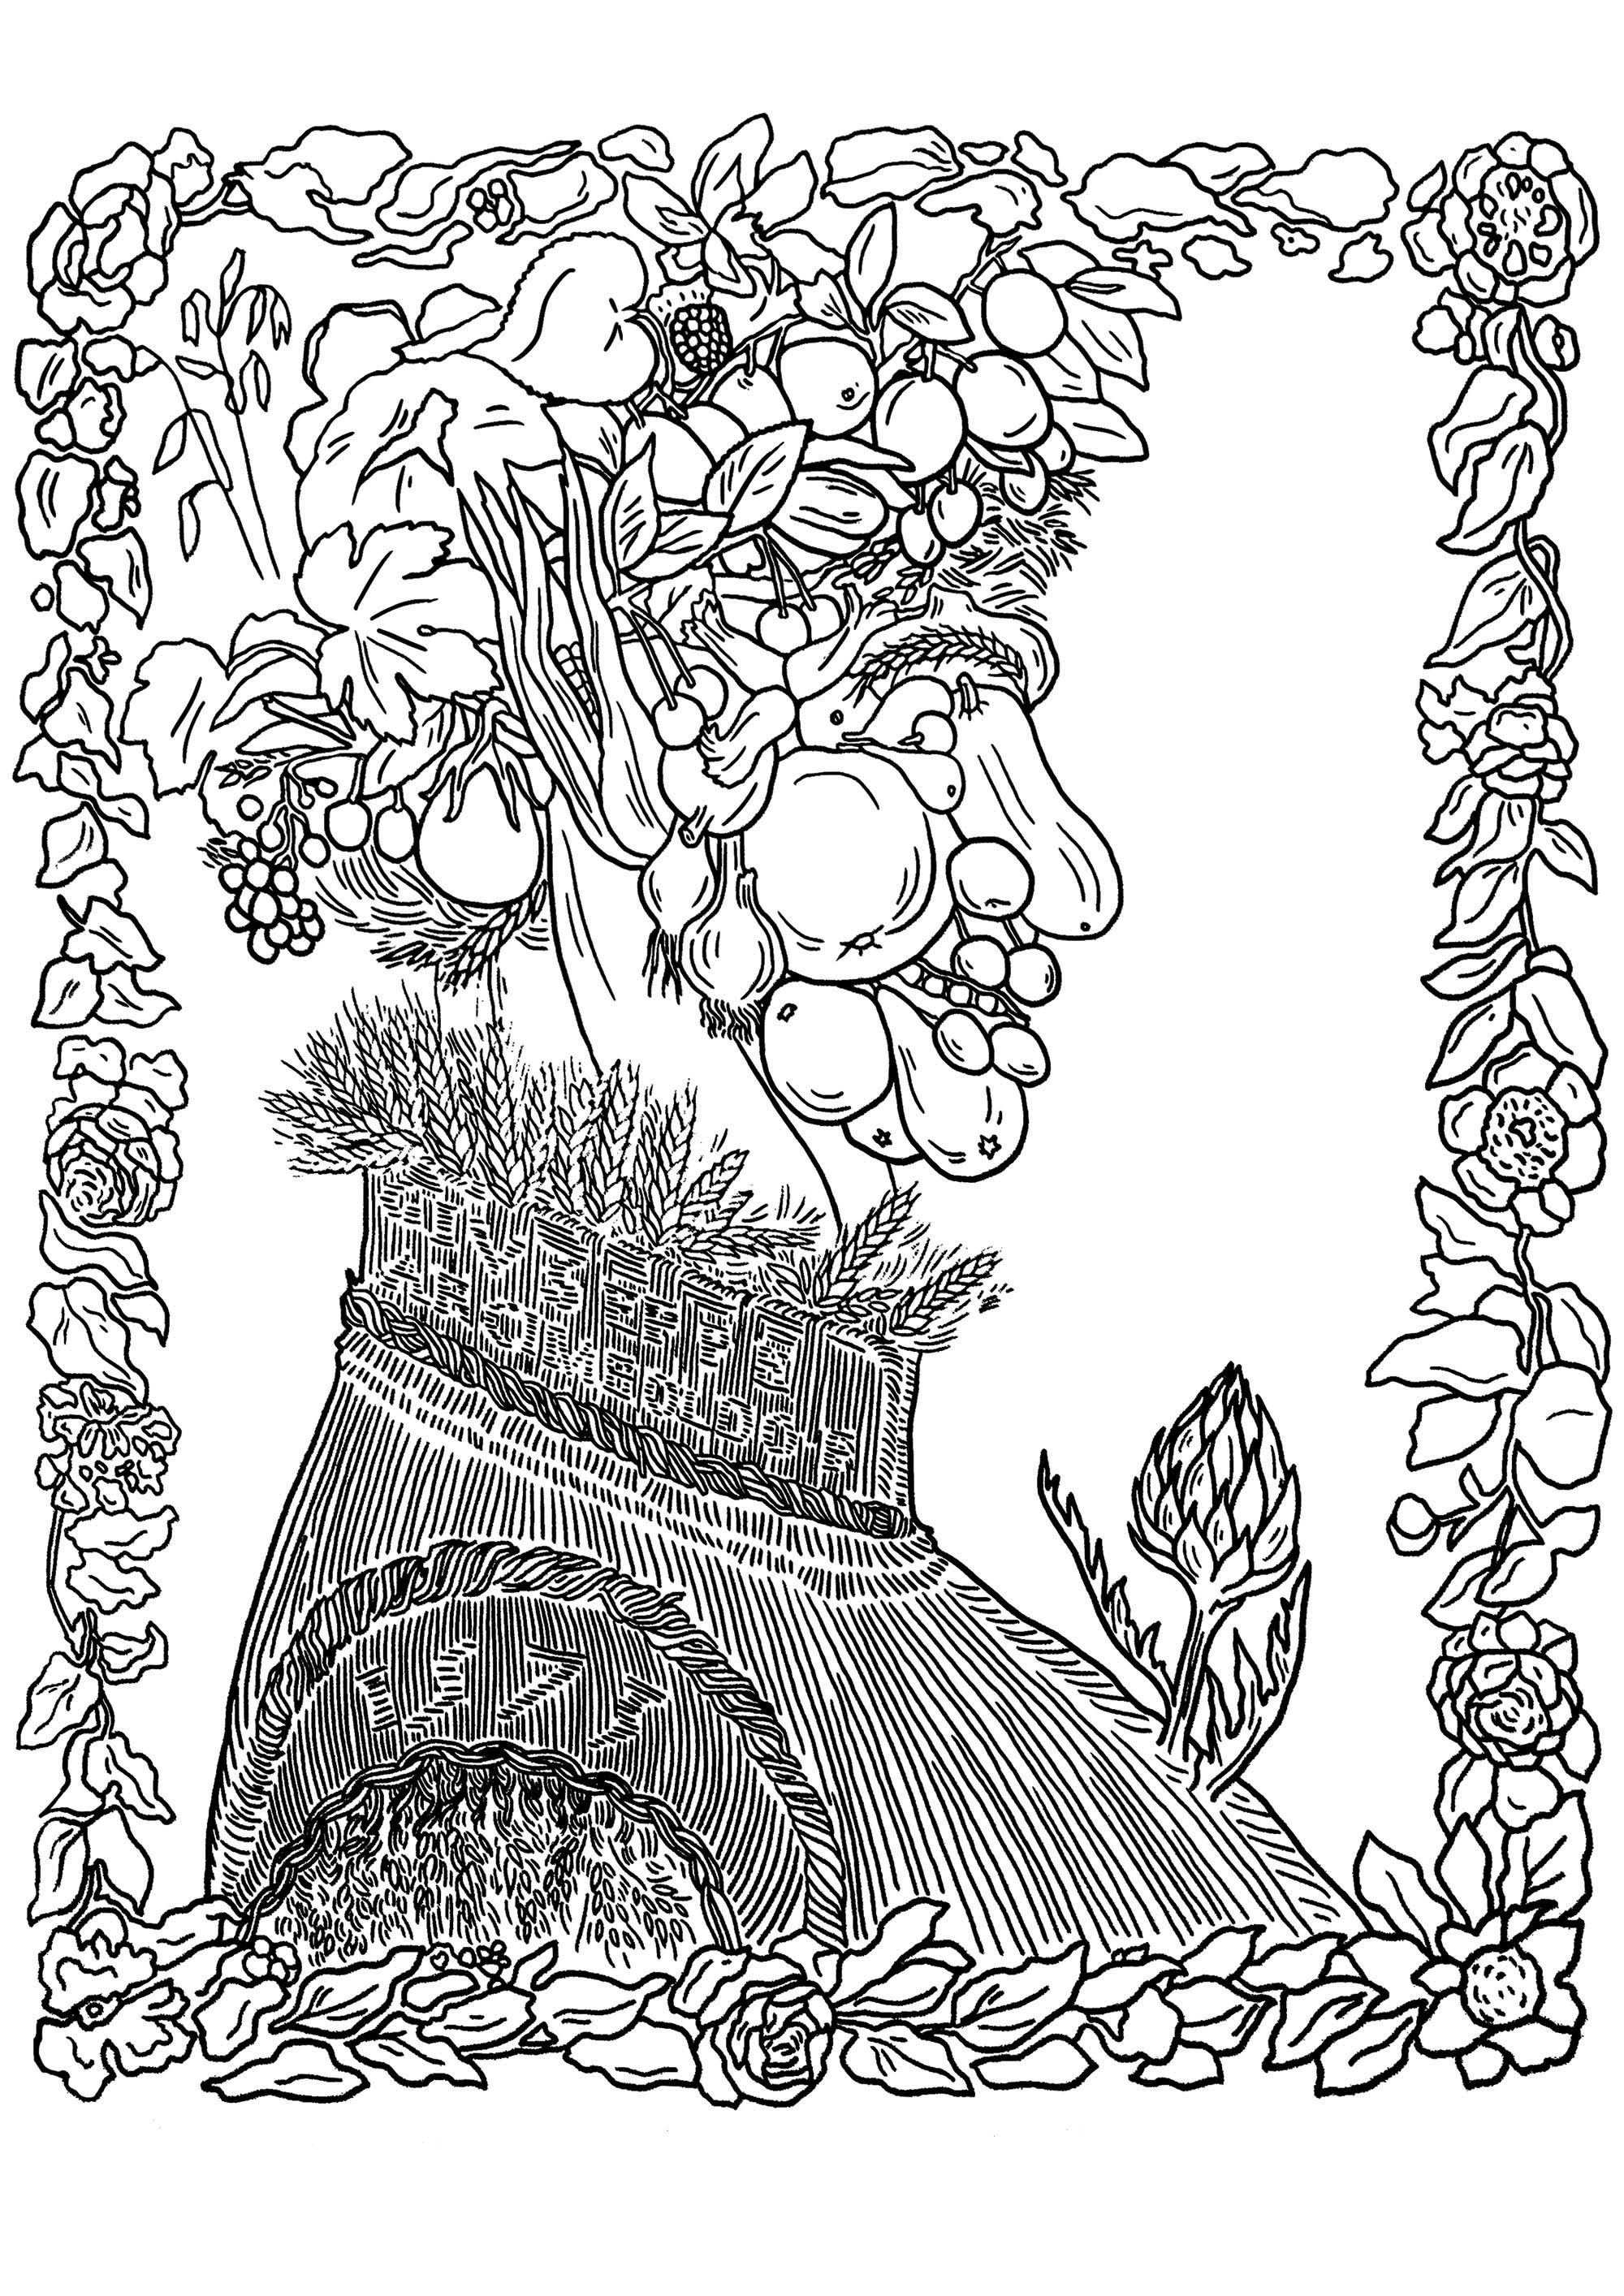 Giuseppe Arcimboldo - Verano (1573). El 'Verano' de Giuseppe Arcimboldo forma parte de una serie de cuatro retratos estacionales, creados a finales del siglo XVI. En esta obra, Arcimboldo compone un rostro enteramente a partir de diversos elementos veraniegos, como frutas, verduras y flores.La imaginativa e intrincada disposición de estos elementos forma un retrato caprichoso e intrigante, que muestra el excepcional talento de Arcimboldo para crear representaciones lúdicas y simbólicas de las estaciones.